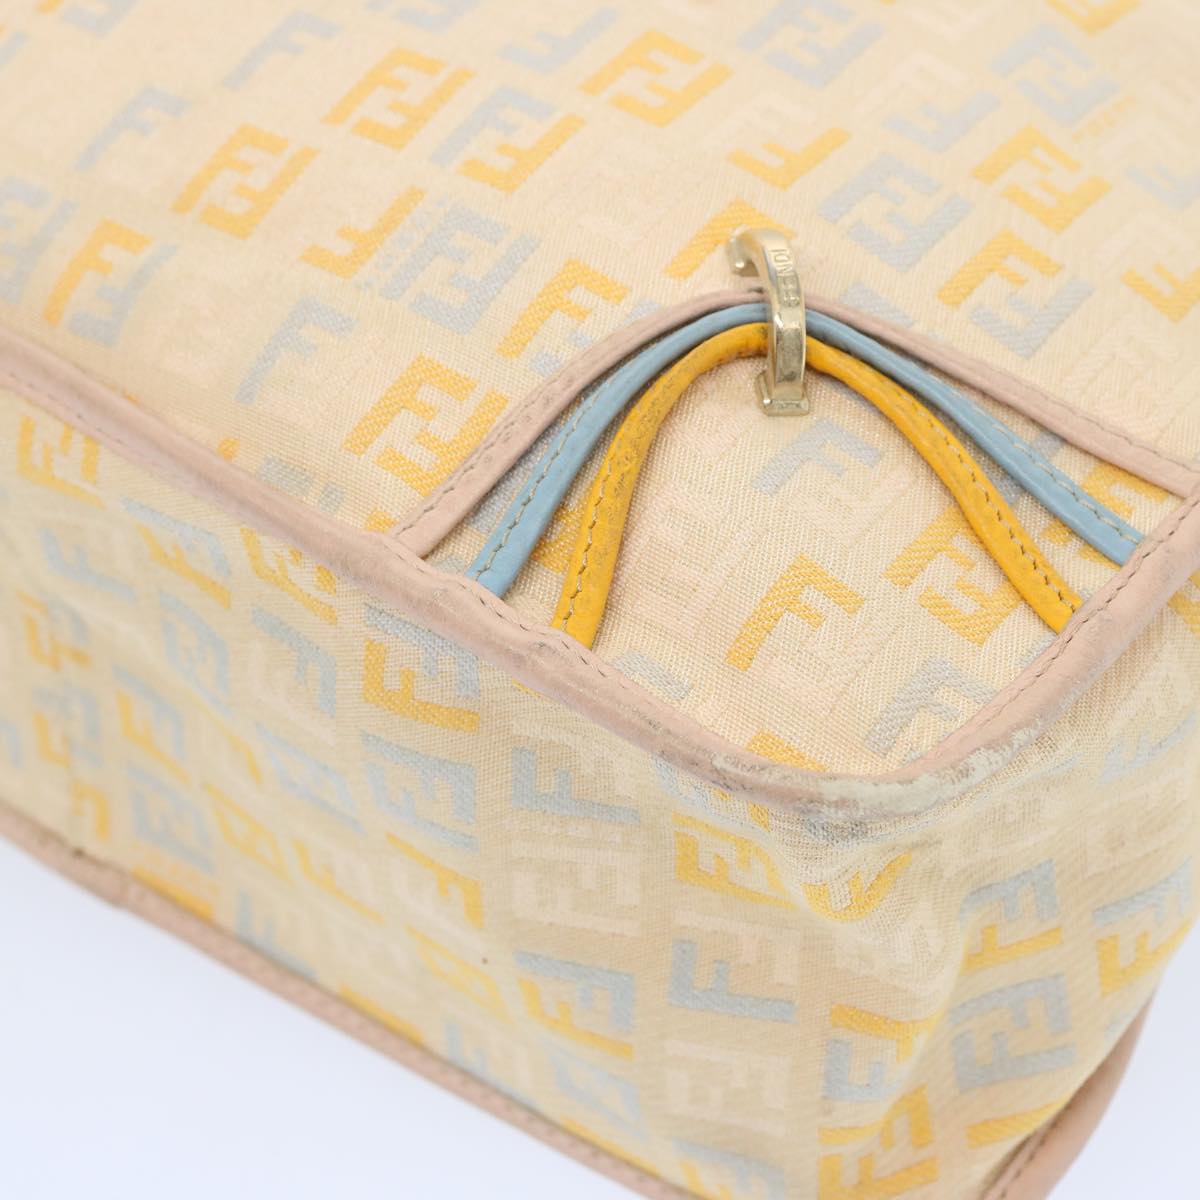 FENDI Zucchino Canvas Shoulder Bag Beige Light Blue yellow Auth 66310